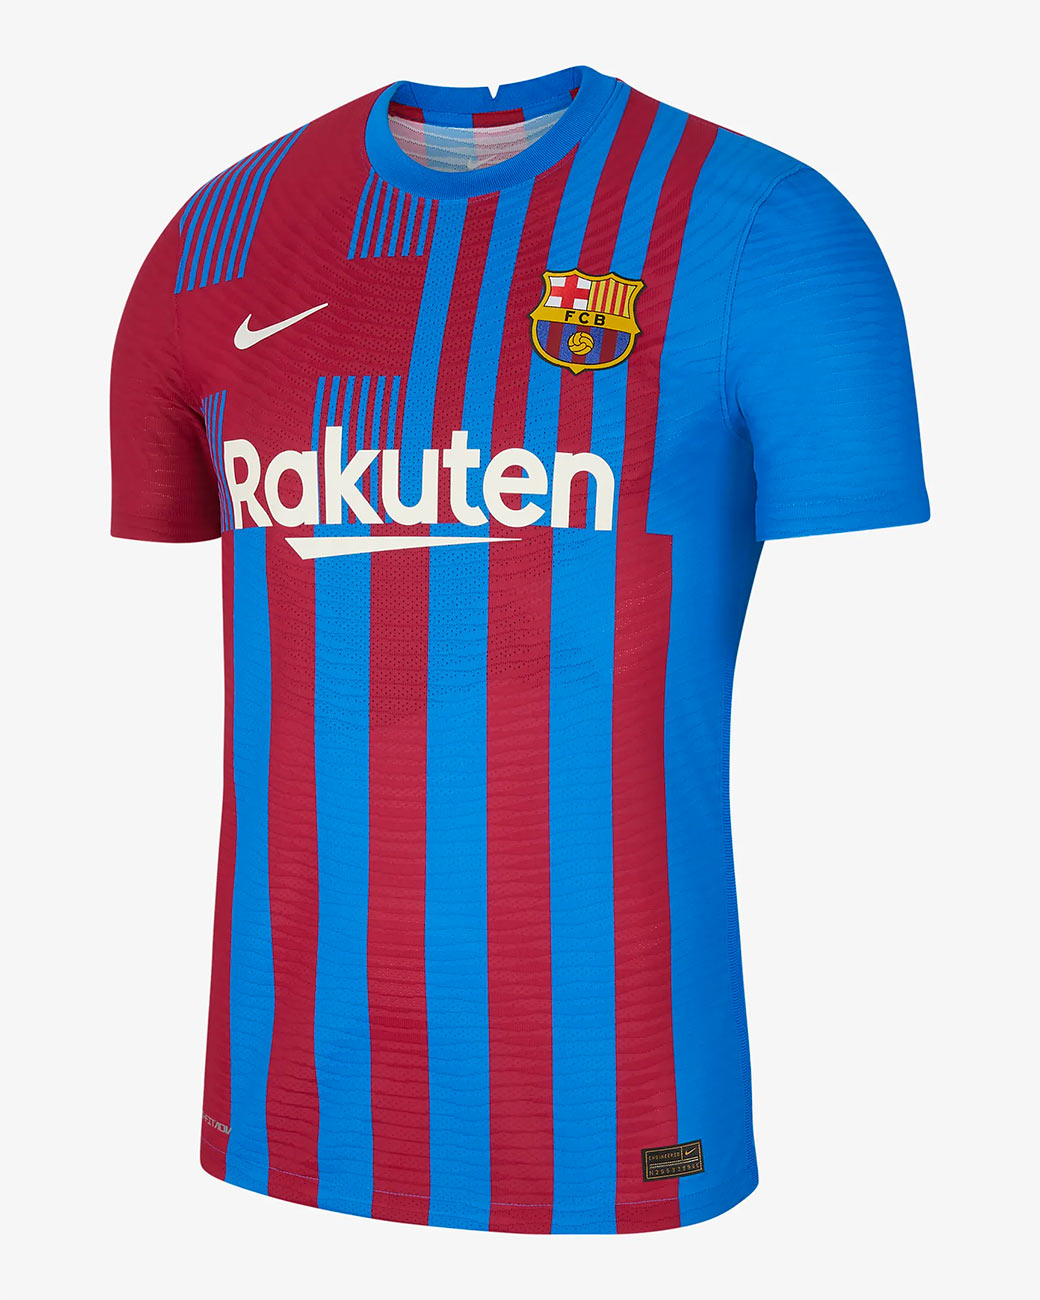 Maglia Barcellona 2021-2022, Nike omaggia lo stemma blaugrana!